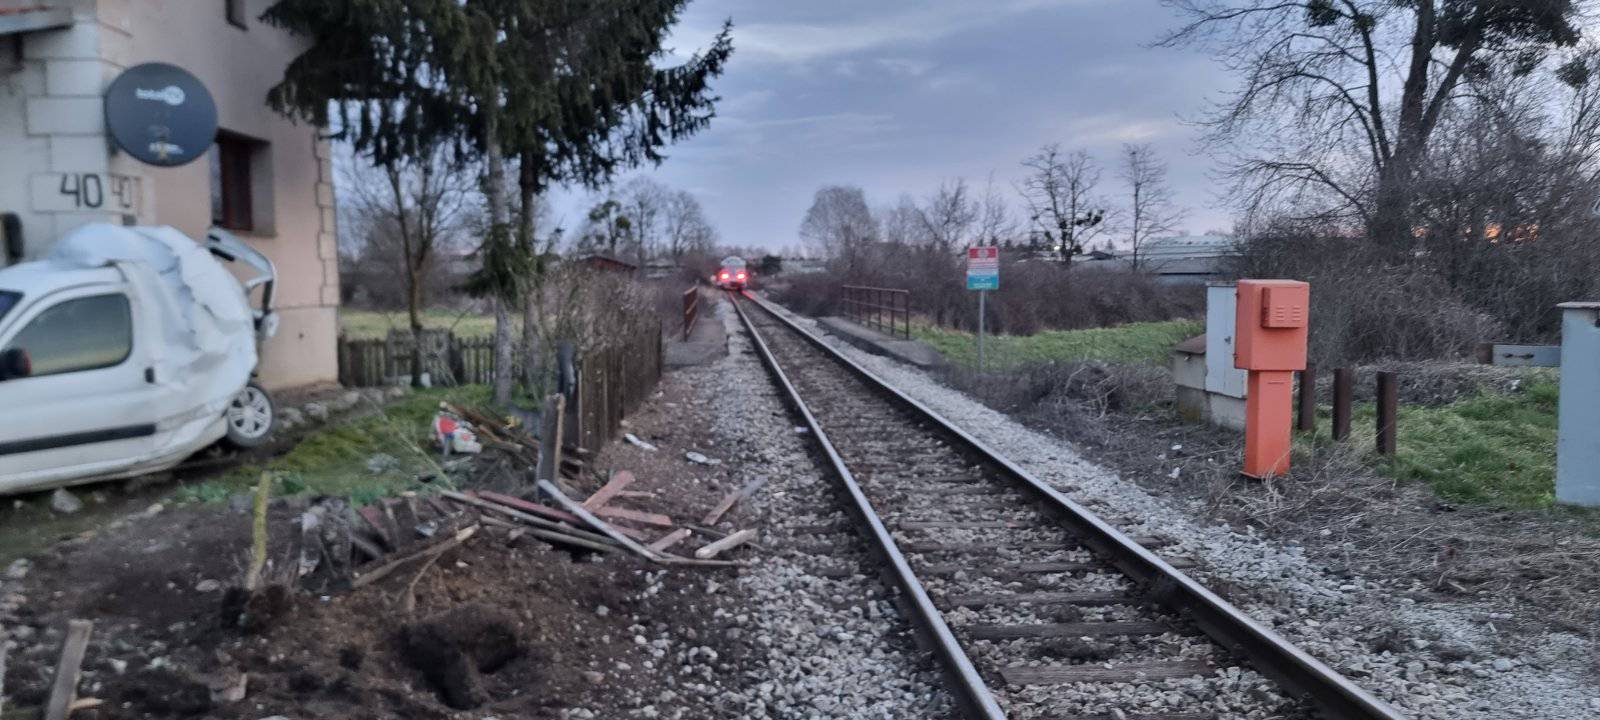 FOTO Vozač u Čakovcu zaobišao rampu i preživio sudar s vlakom koji ga je odbacio u zid kuće